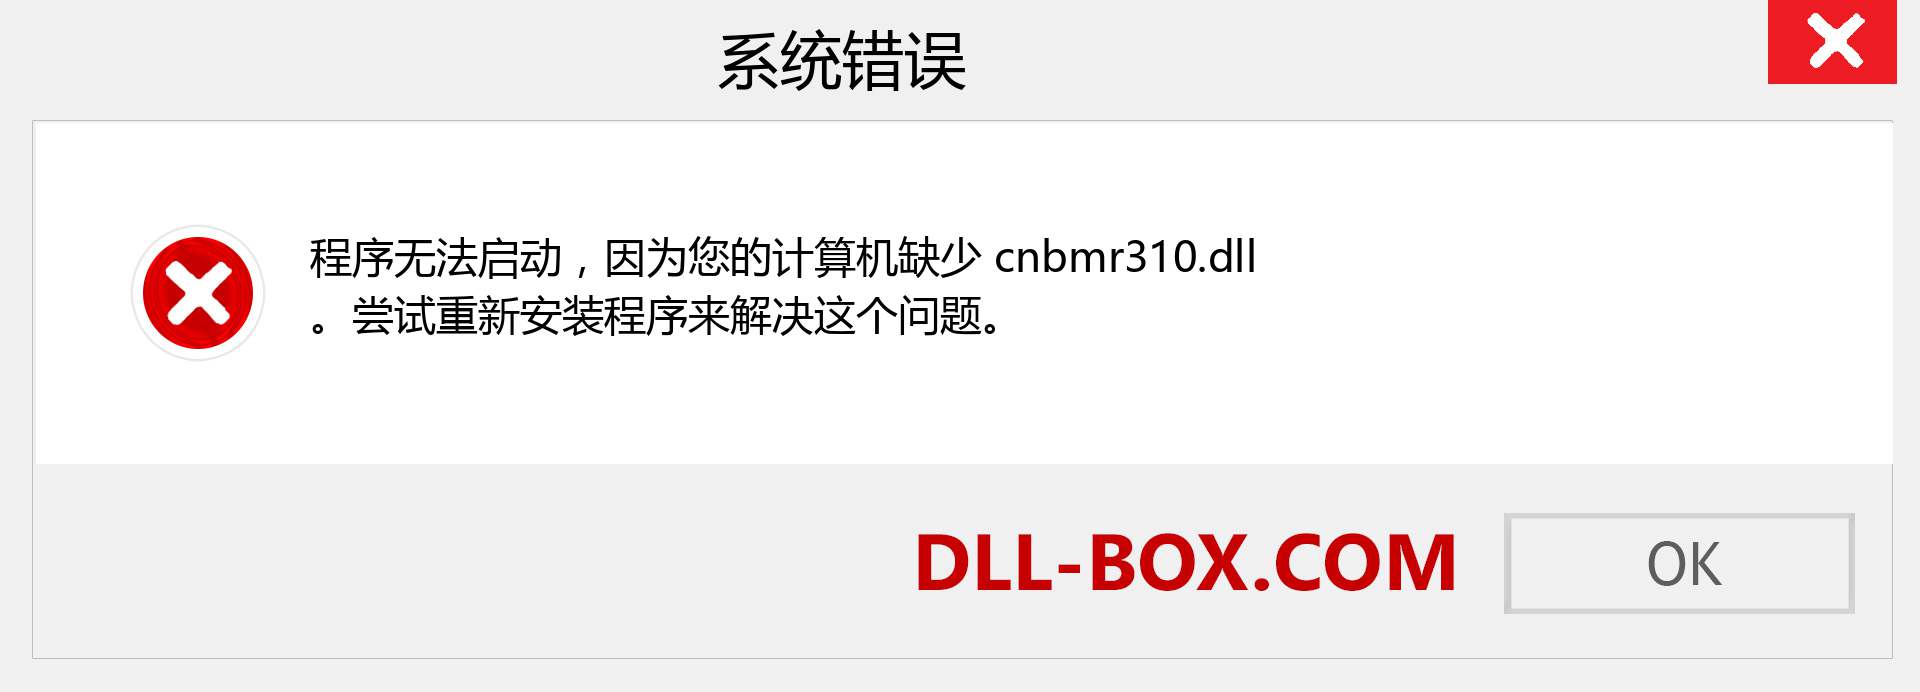 cnbmr310.dll 文件丢失？。 适用于 Windows 7、8、10 的下载 - 修复 Windows、照片、图像上的 cnbmr310 dll 丢失错误